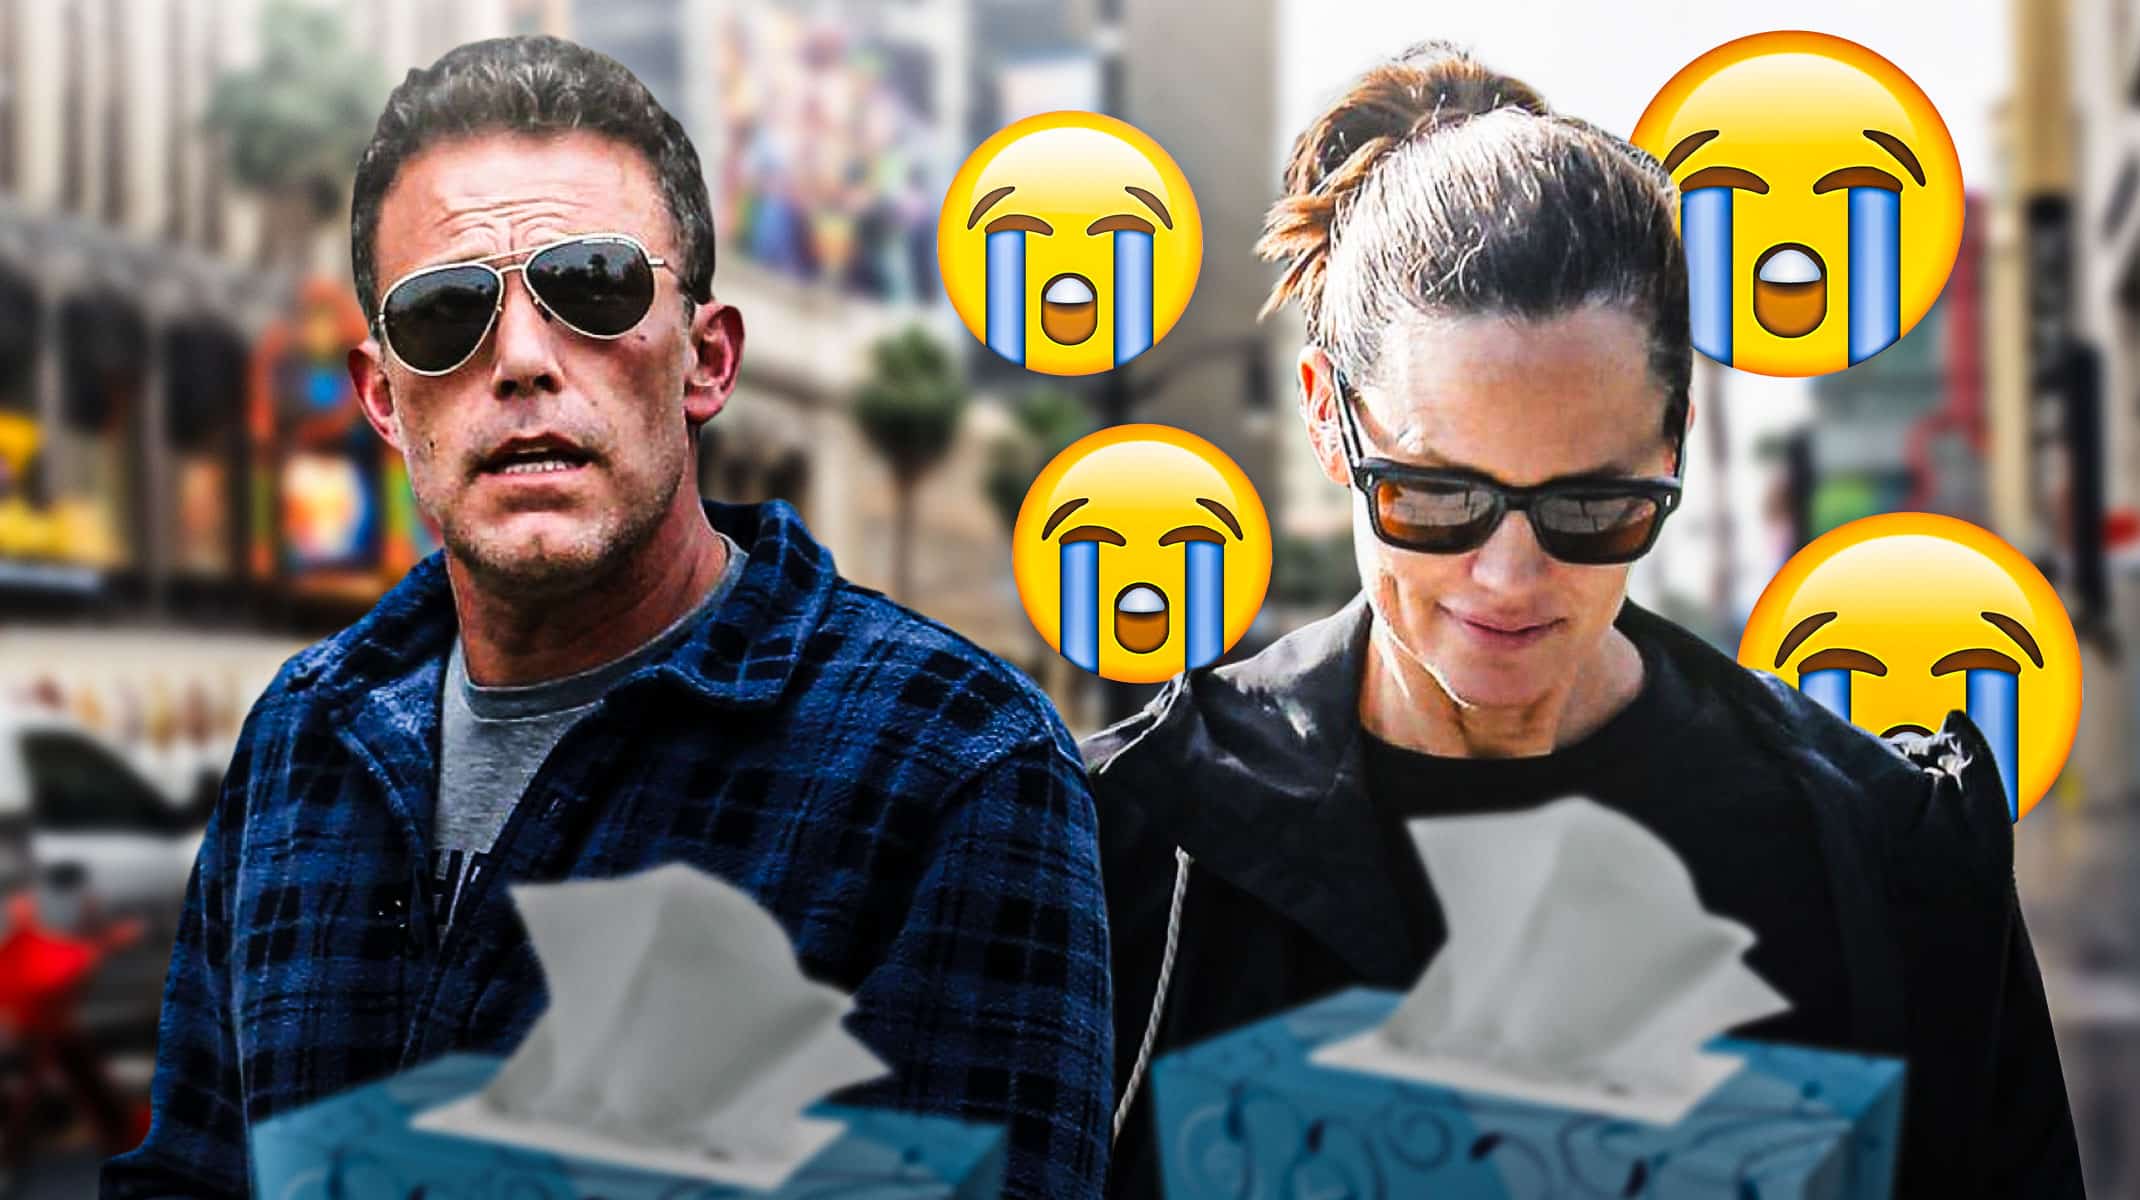 Jennifer Garner gets emotional, but not about Ben Affleck's rumored divorce